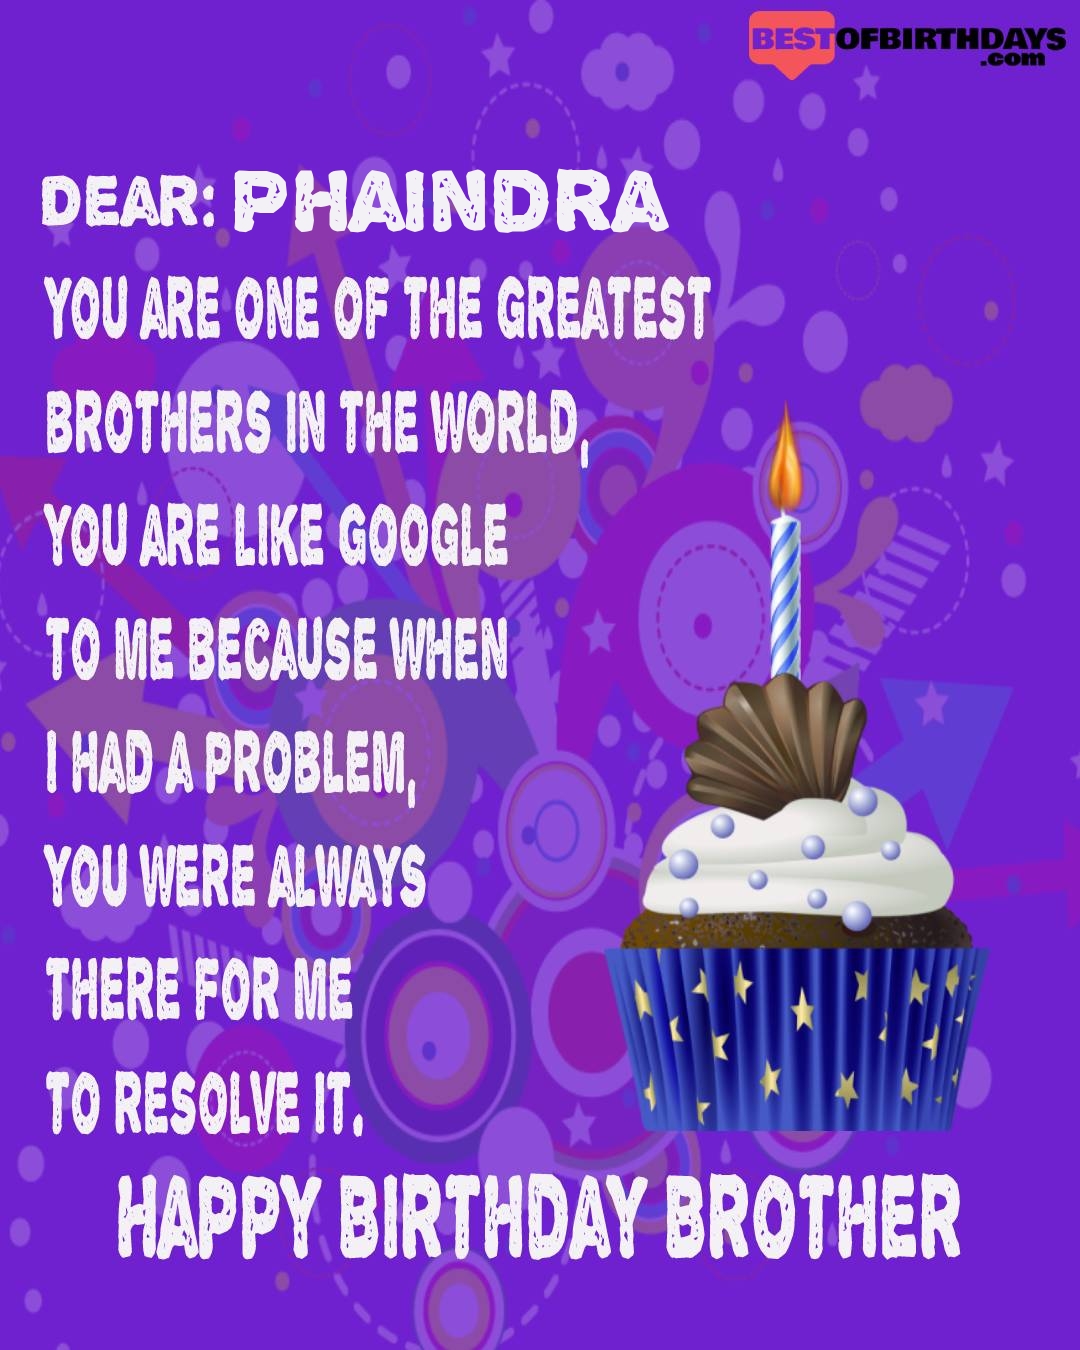 Happy birthday phaindra bhai brother bro